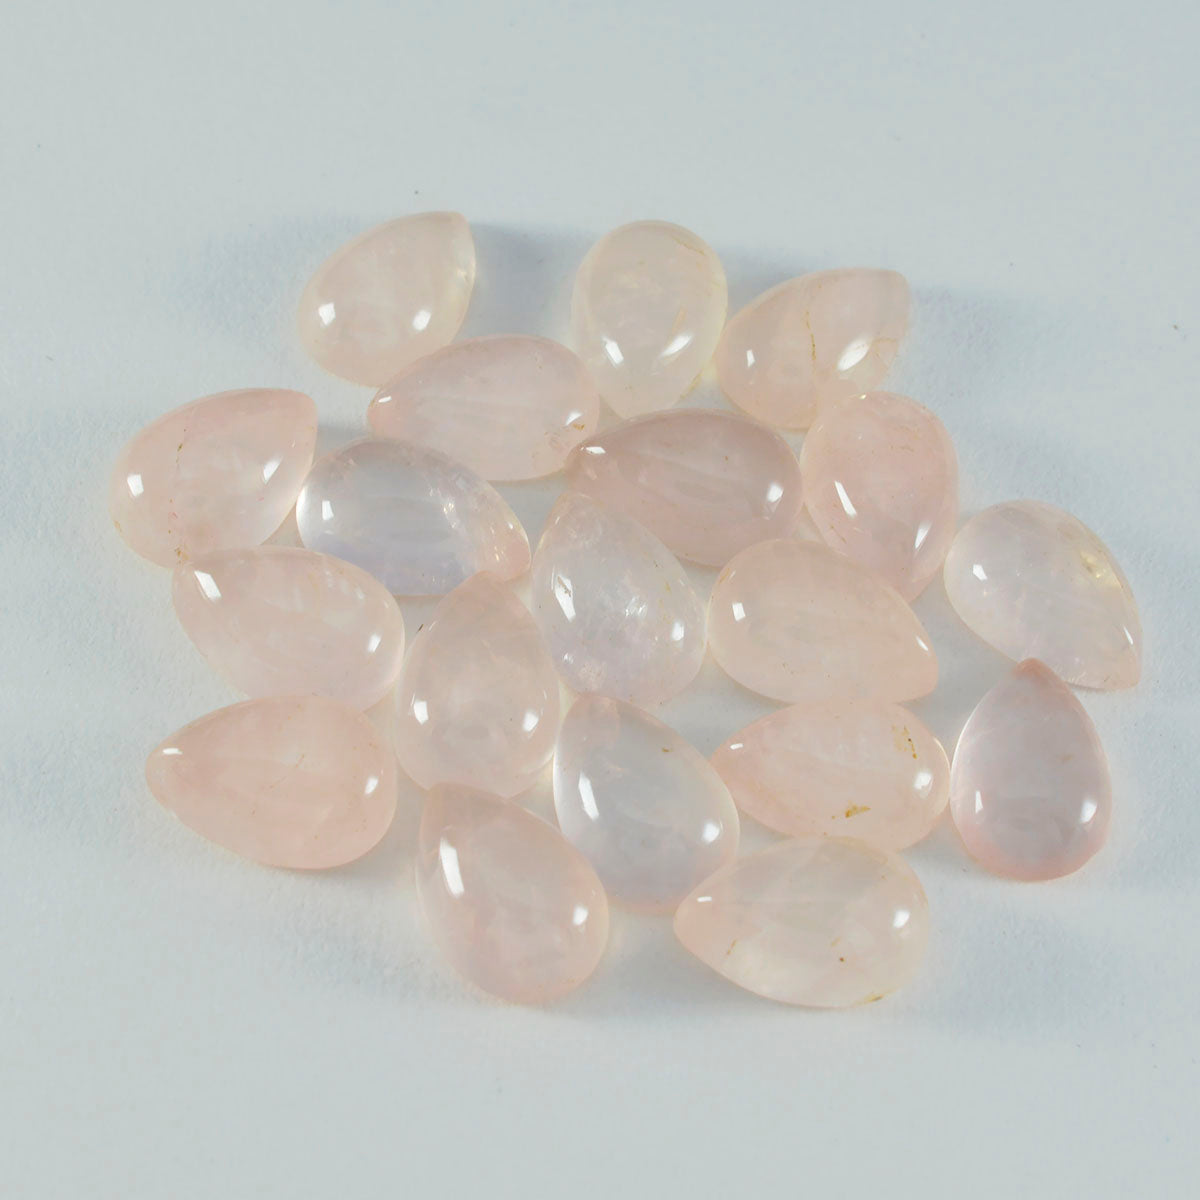 Riyogems 1pc cabochon de quartz rose rose 8x12mm forme de poire jolie qualité pierre précieuse en vrac